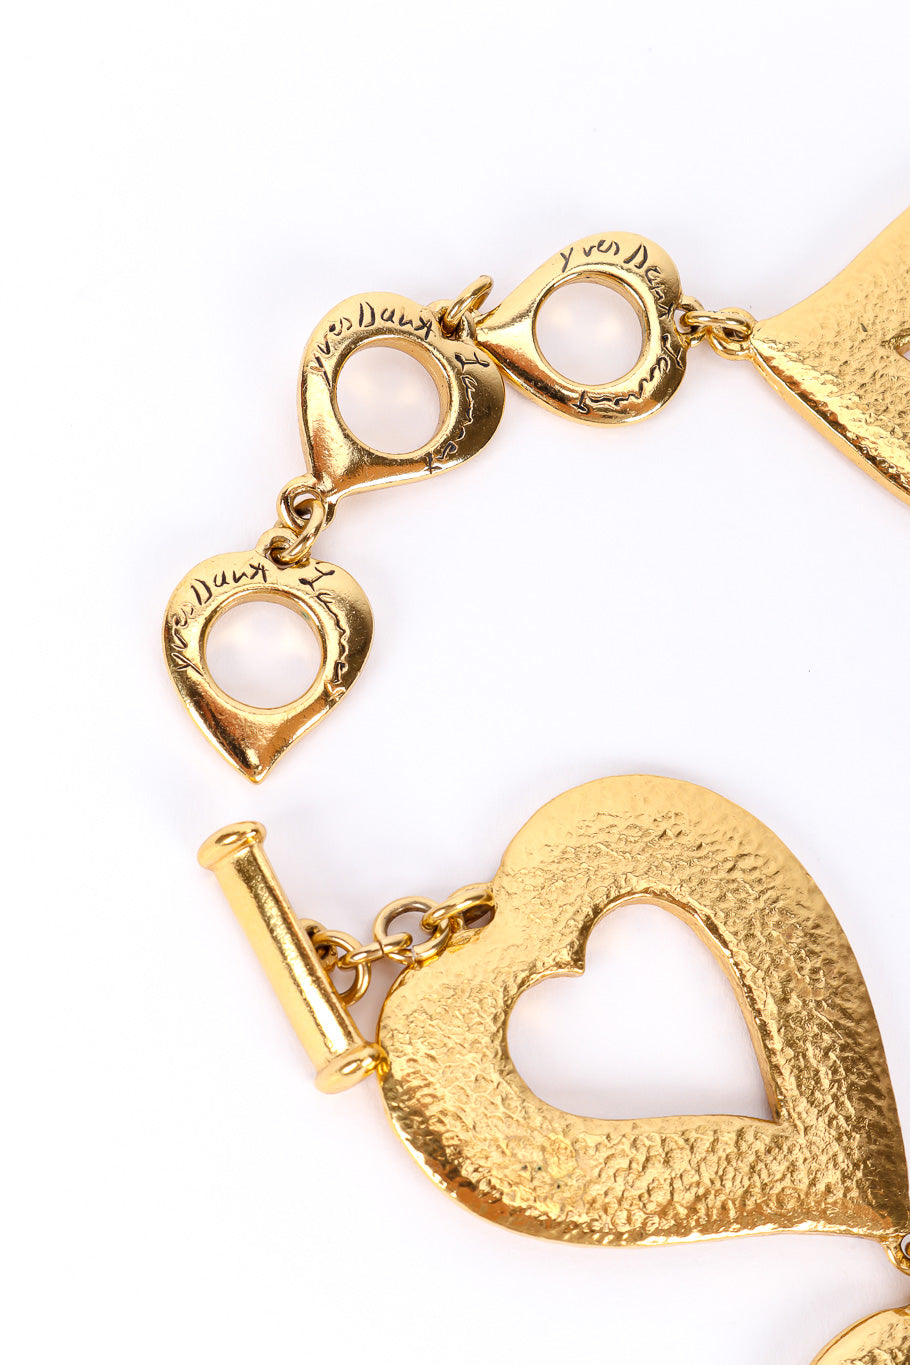 Vintage Yves Saint Laurent Heart Pendant Collar Necklace toggle clasp closeup @Recessla